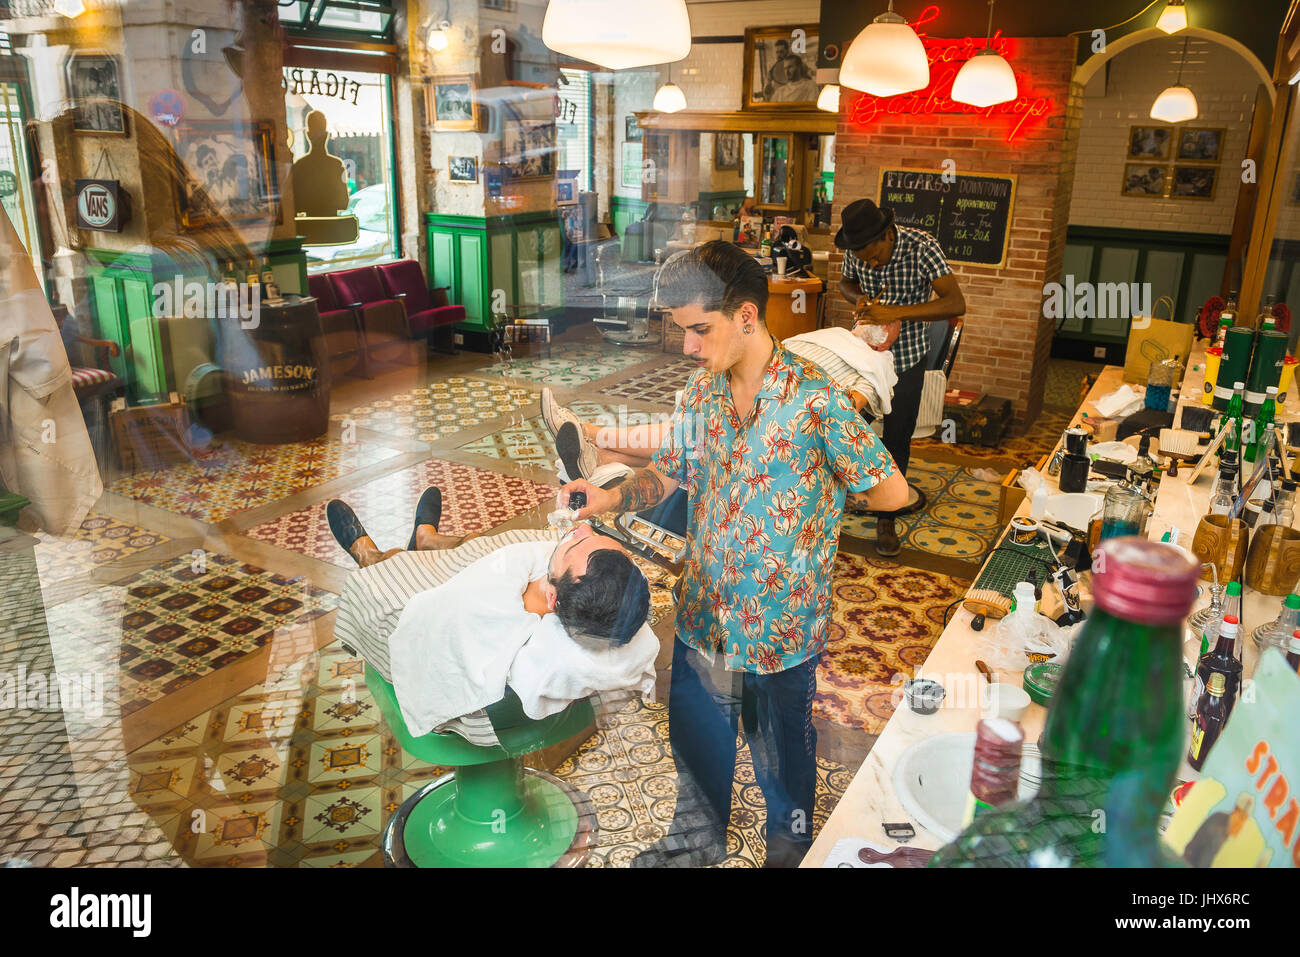 Salon de coiffure, vue à travers la vitre d'assiette des hommes rasés dans le salon de coiffure traditionnel de Figaro dans le quartier Baixa de Lisbonne, Portugal. Banque D'Images